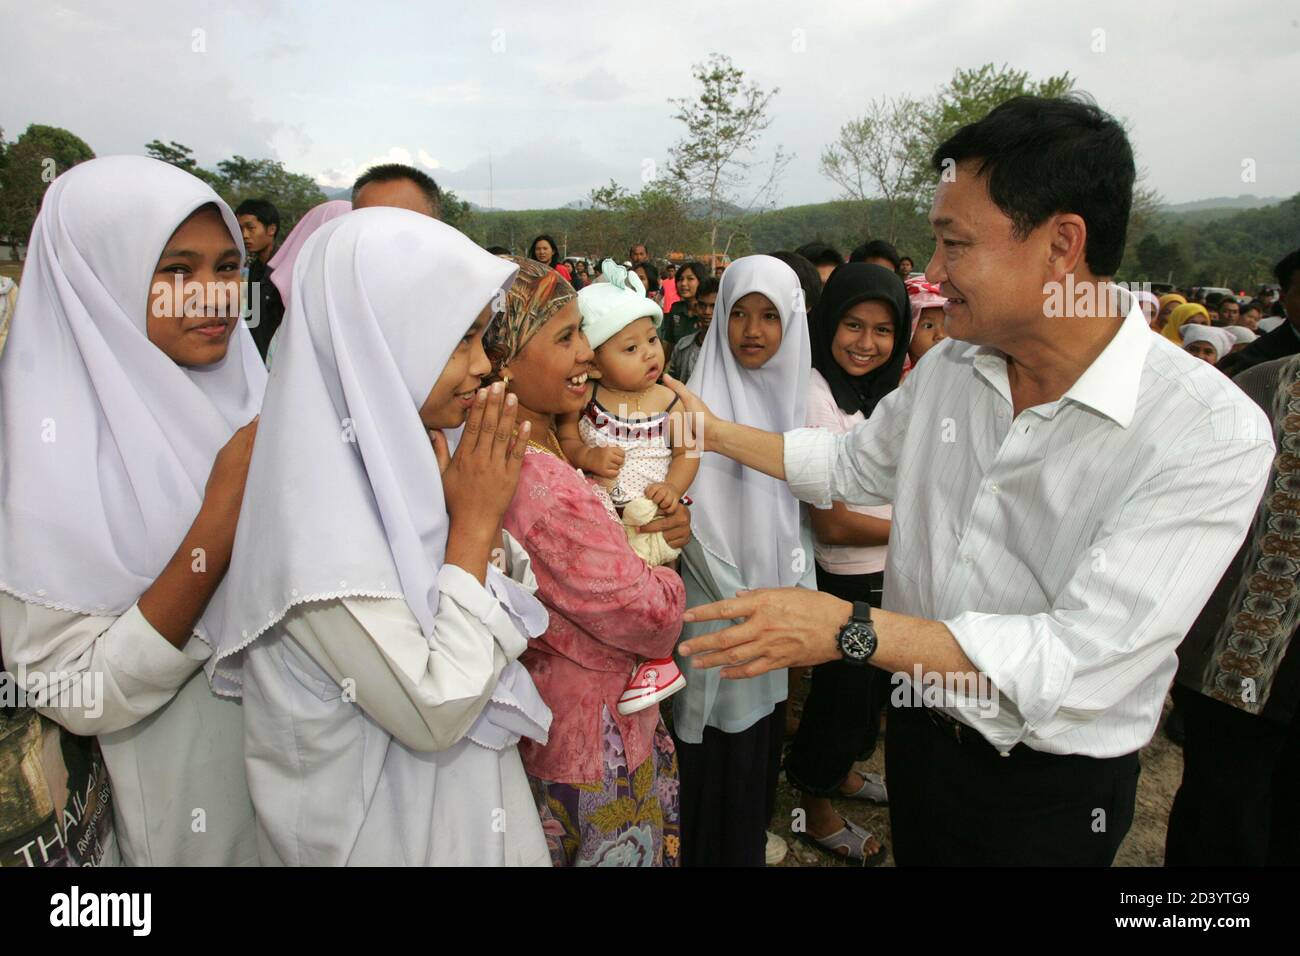 Der thailändische Premierminister Thaksin Shinawatra trifft am 750 16. Februar 2005 Dorfbewohner in der Provinz Yala, 1,200 km südlich von Bangkok. Thaksin kam am Mittwoch im weitgehend muslimischen Süden mit einer strengen Botschaft an Dorfbewohner an, die versucht waren, separatistischen Militanten zu helfen. REUTERS/Subree Sukplang SS/SA Stockfoto